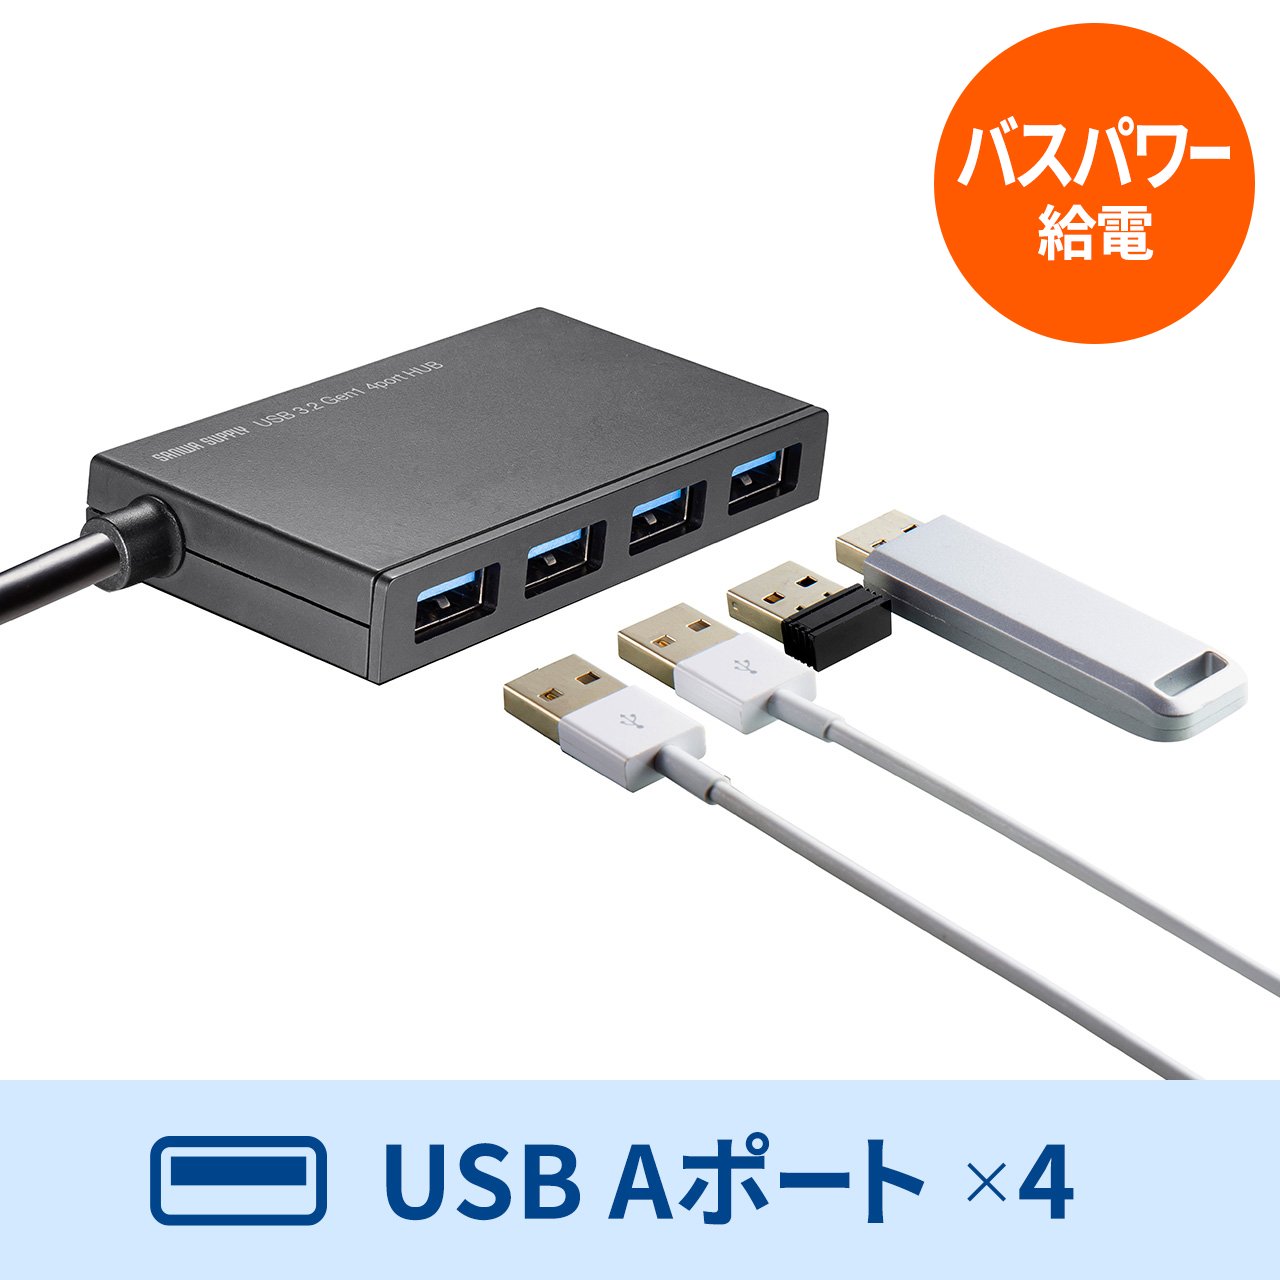 USBハブ 4ポート USB-A ケーブル長1m バスパワー 薄型 軽量 コンパクト